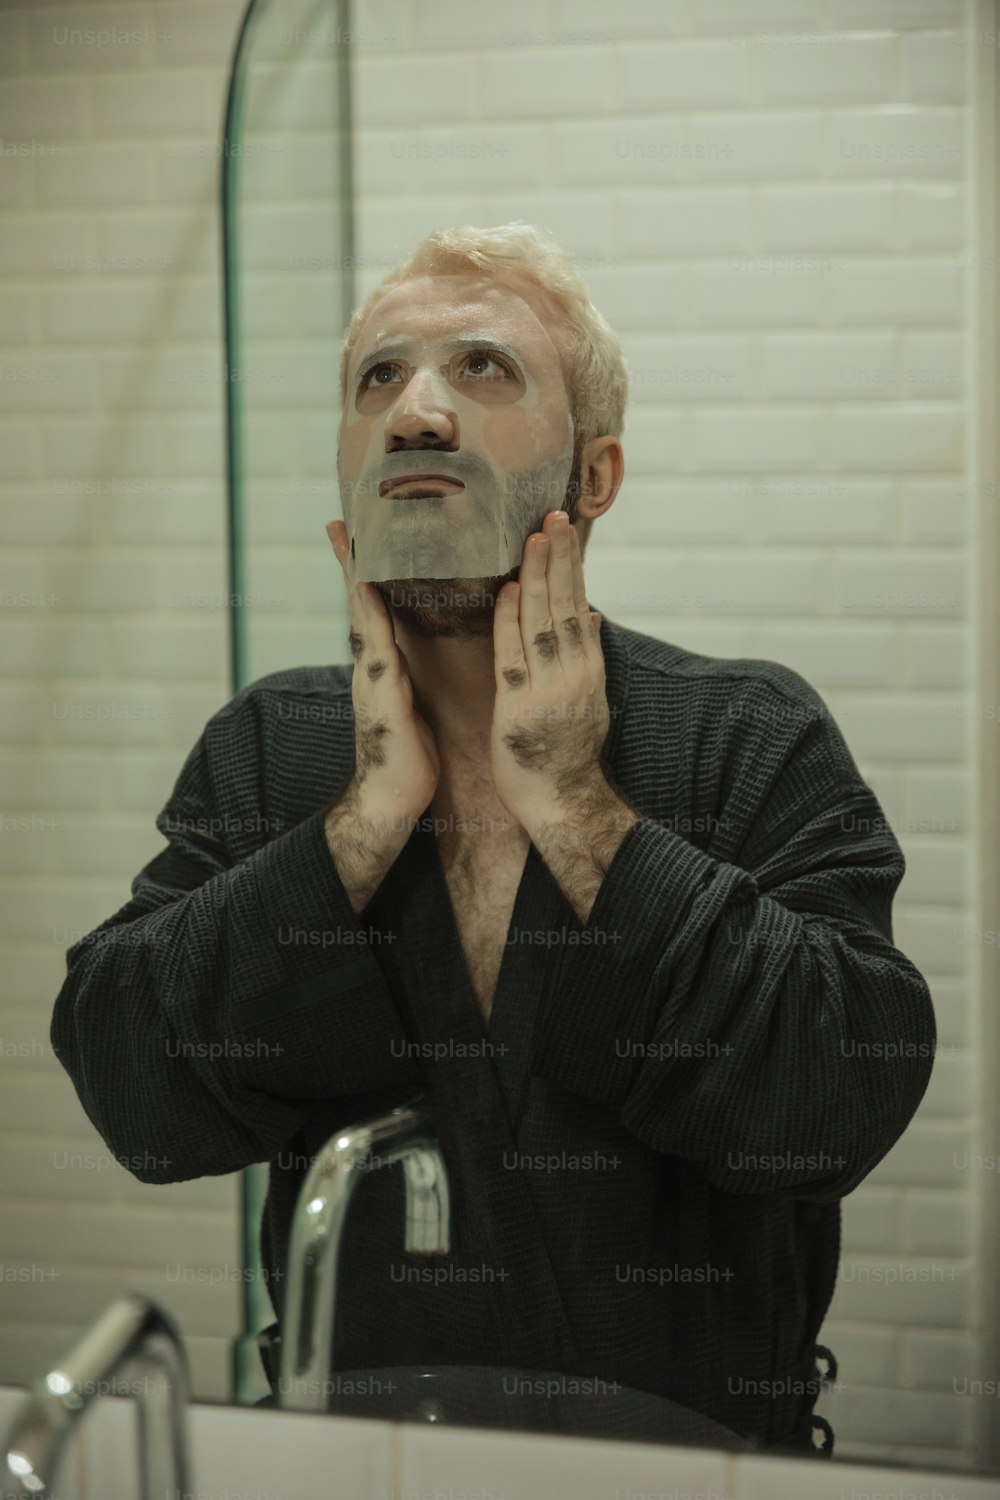 Un homme se rase le visage devant un miroir